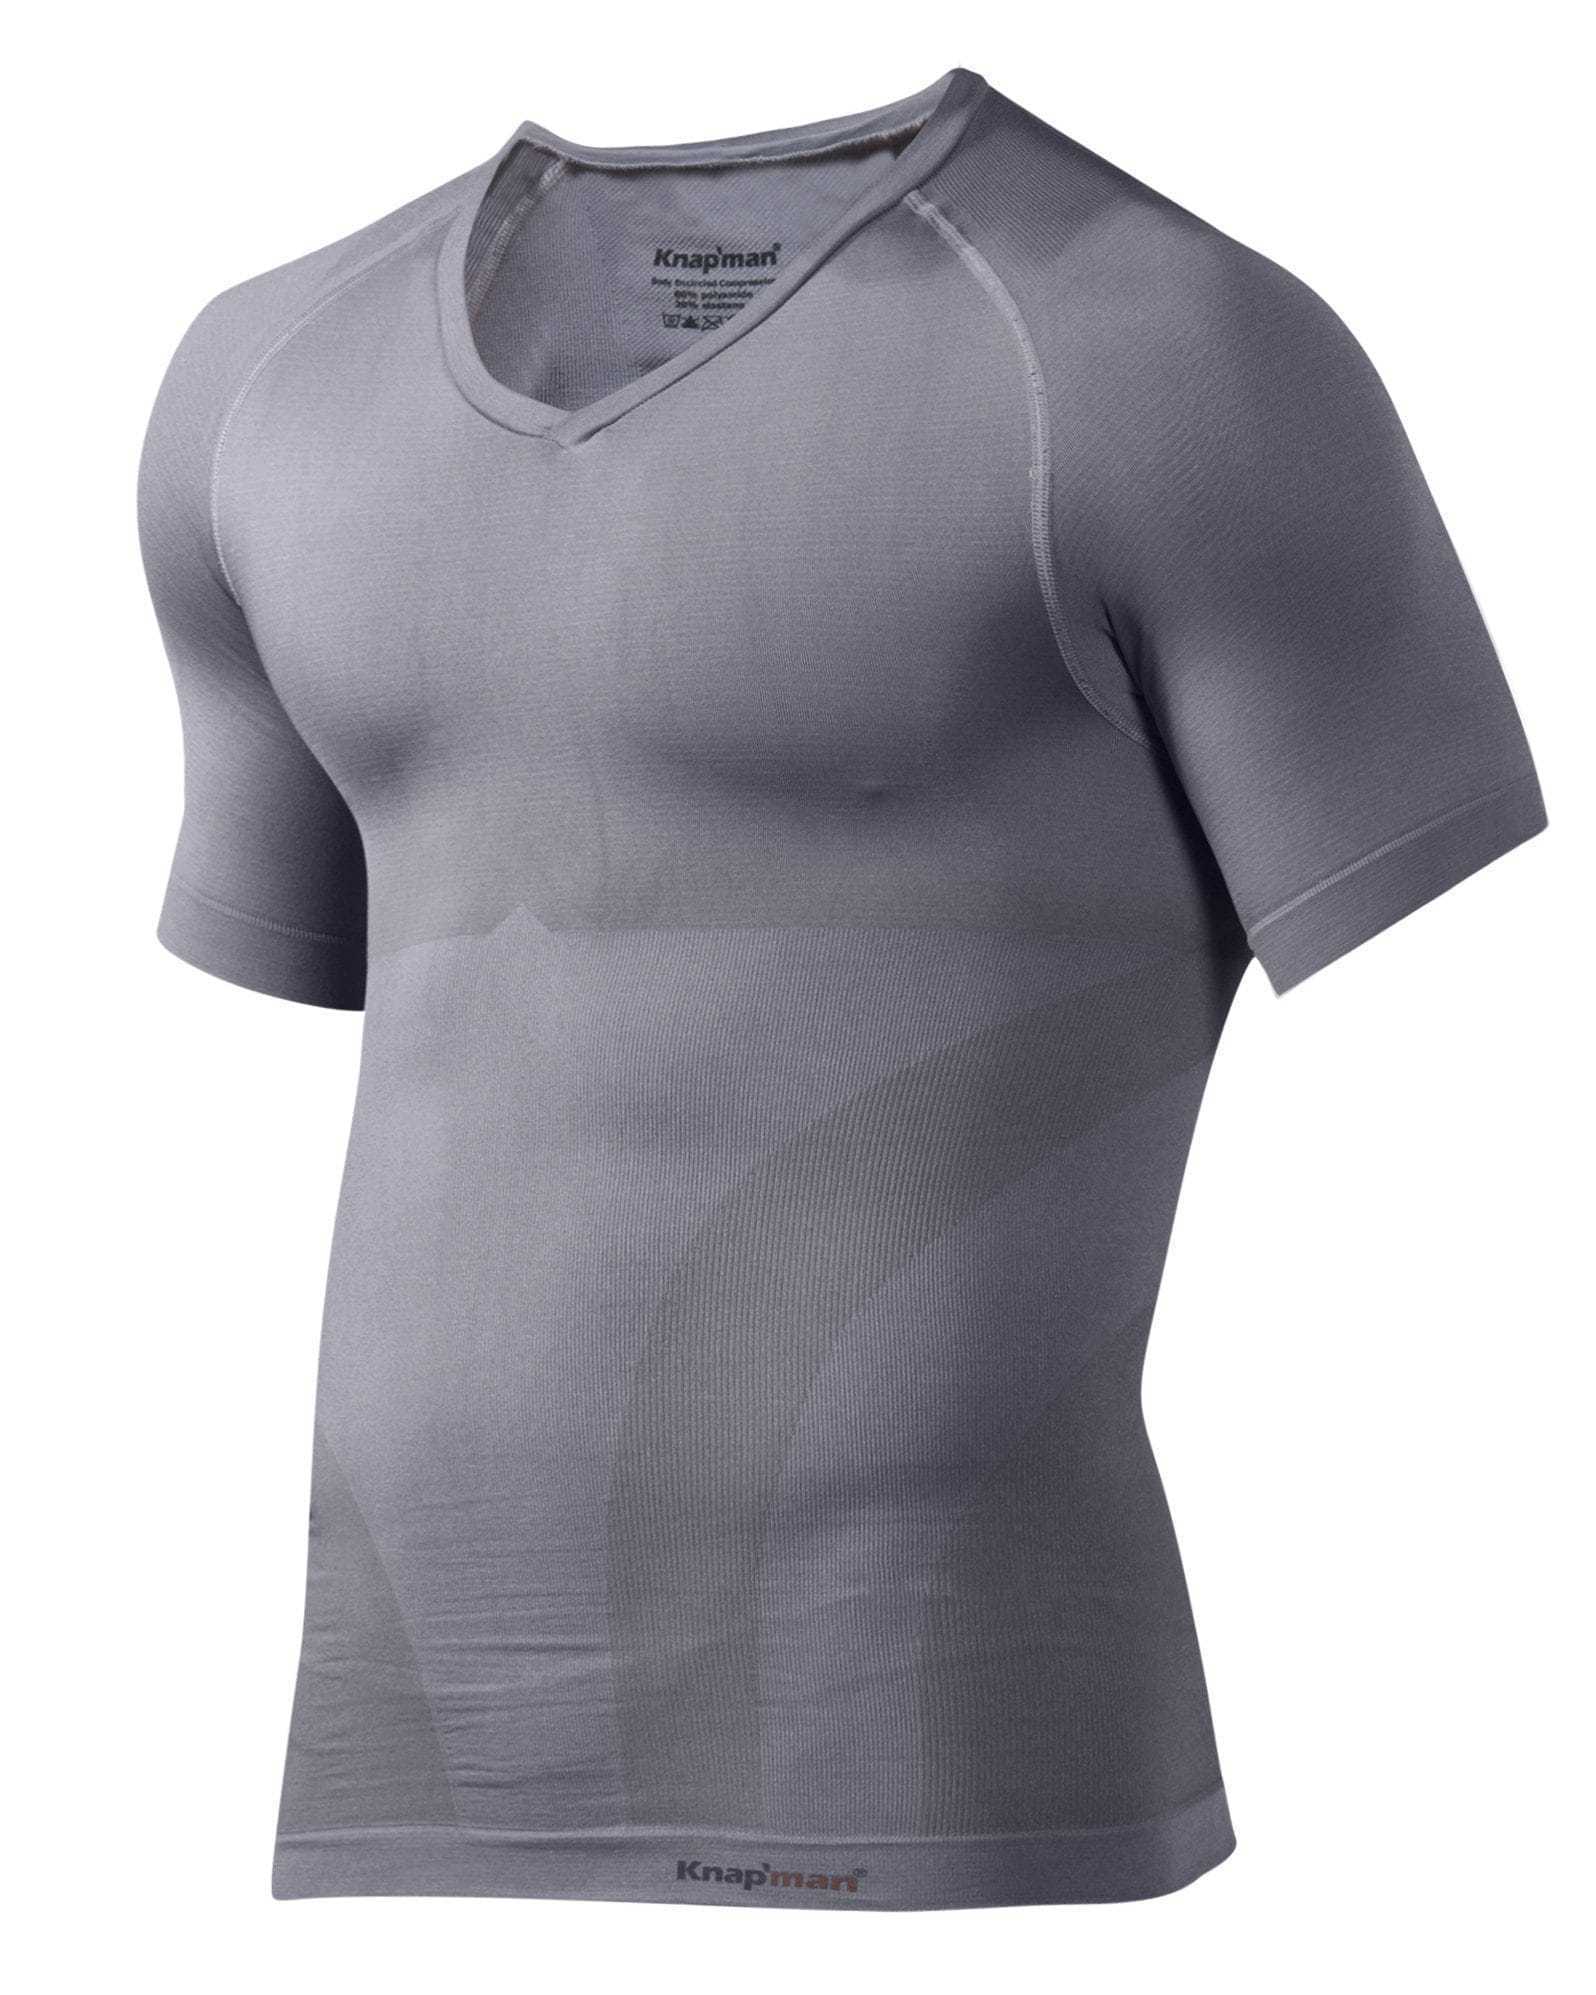 TWOPACK Knap'man Corrigerend Shirt V-hals 2.0 grijs - Knap'man - online-kopen - Knapman.be - De gespecialiseerde webwinkel in compressiekleding